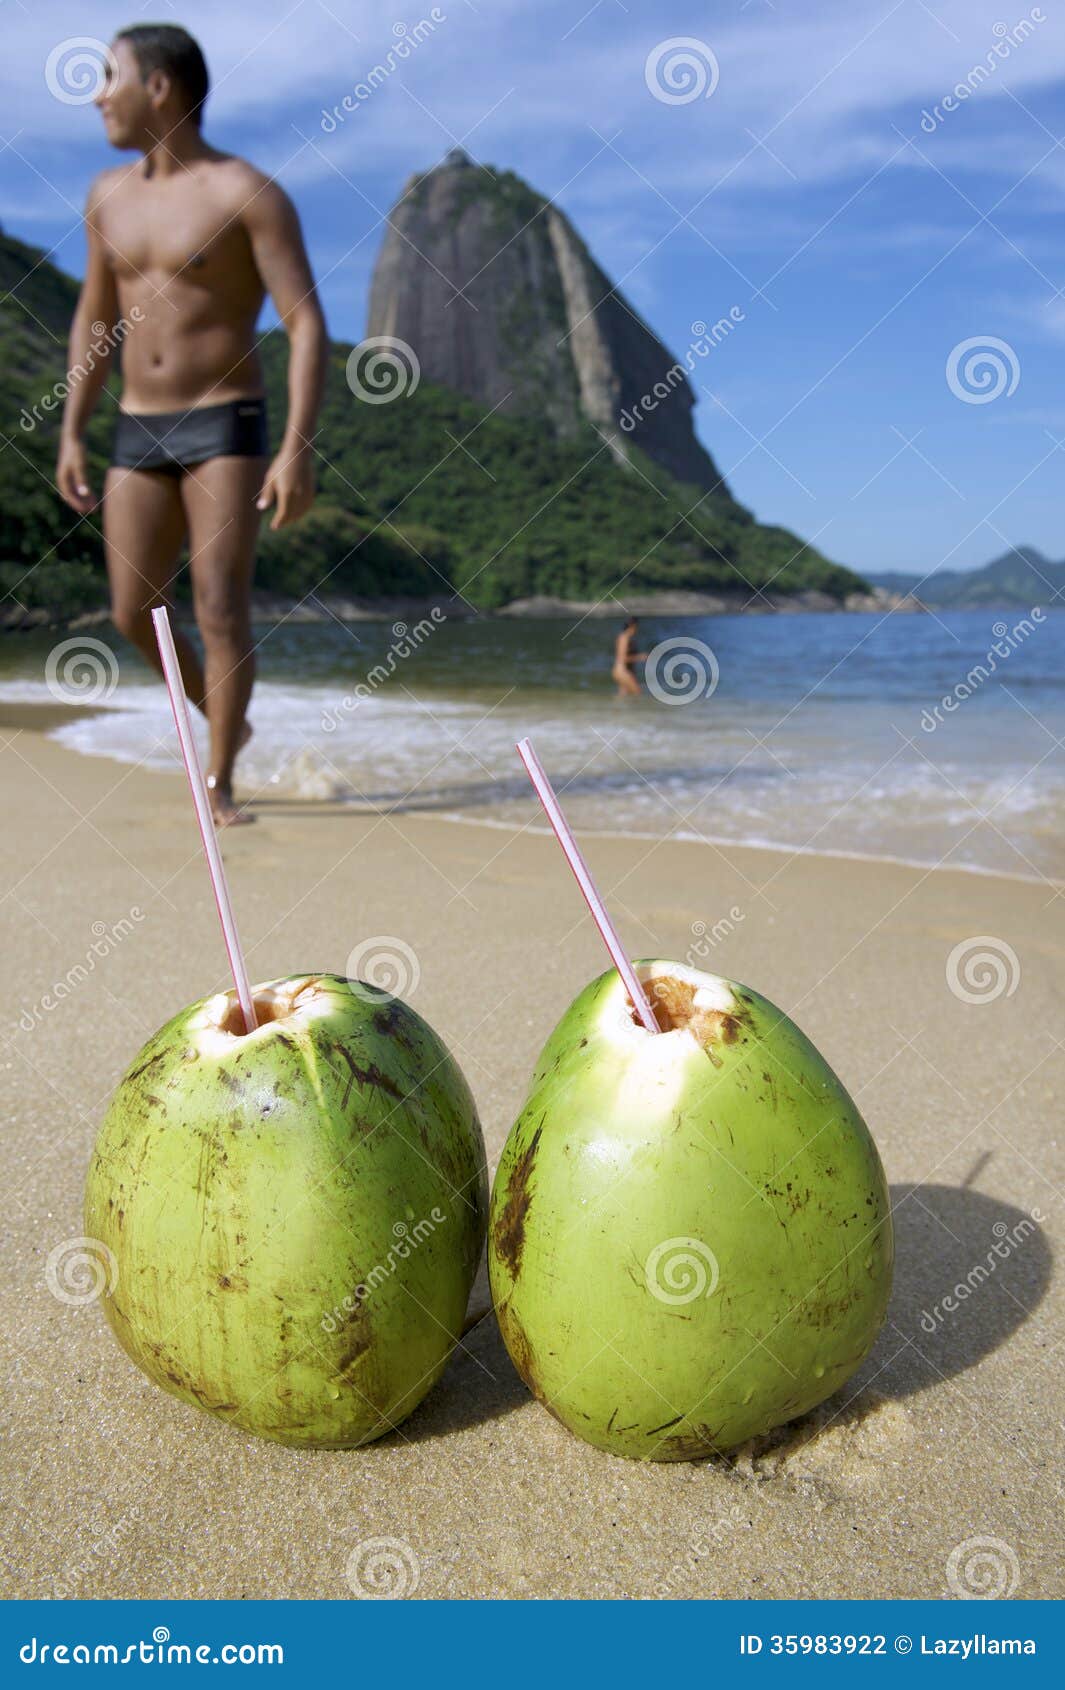 brazilian coco gelado beach rio de janeiro